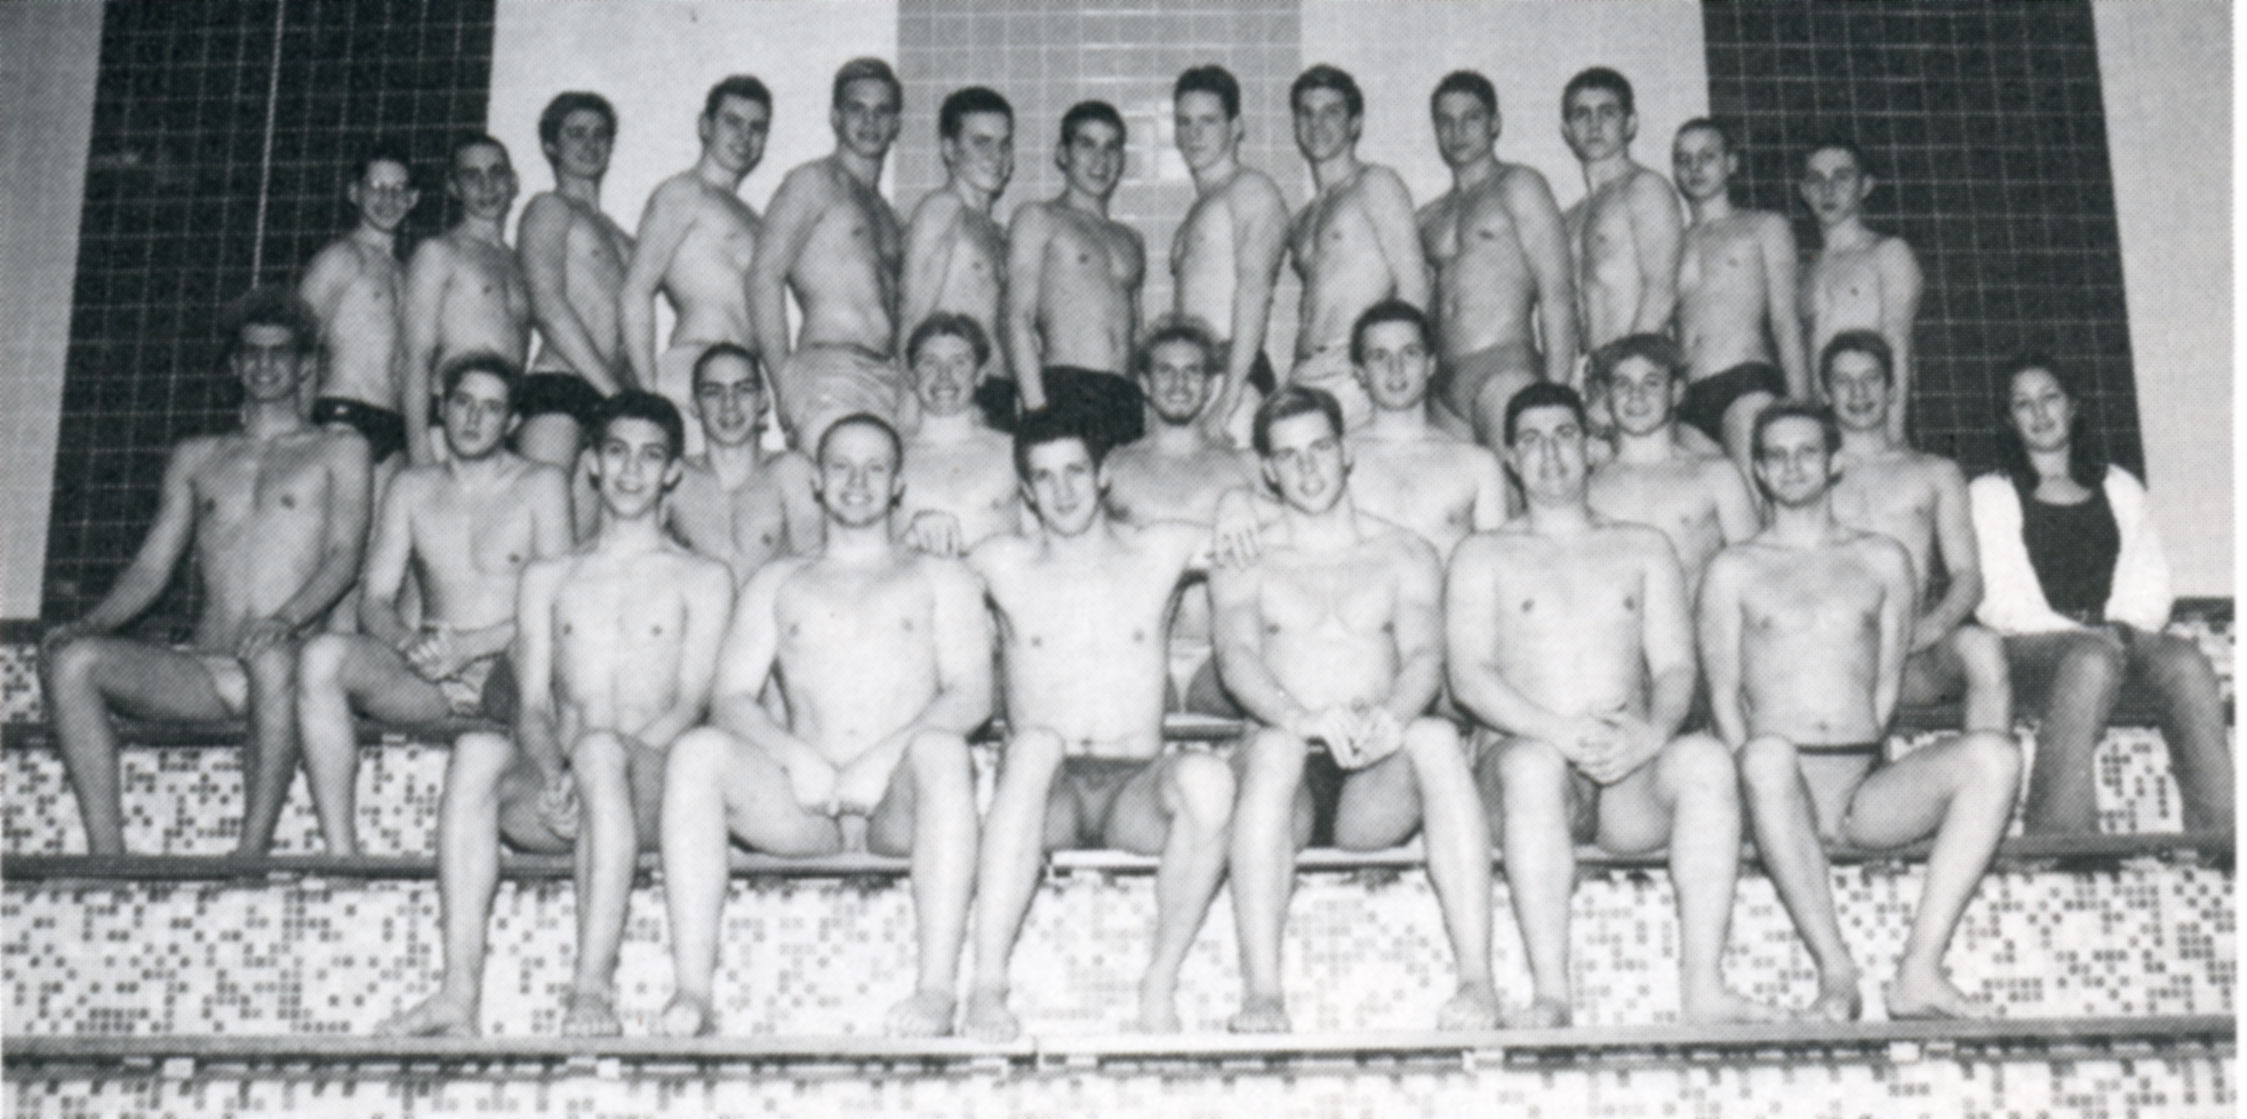 Naked Swim Team 95